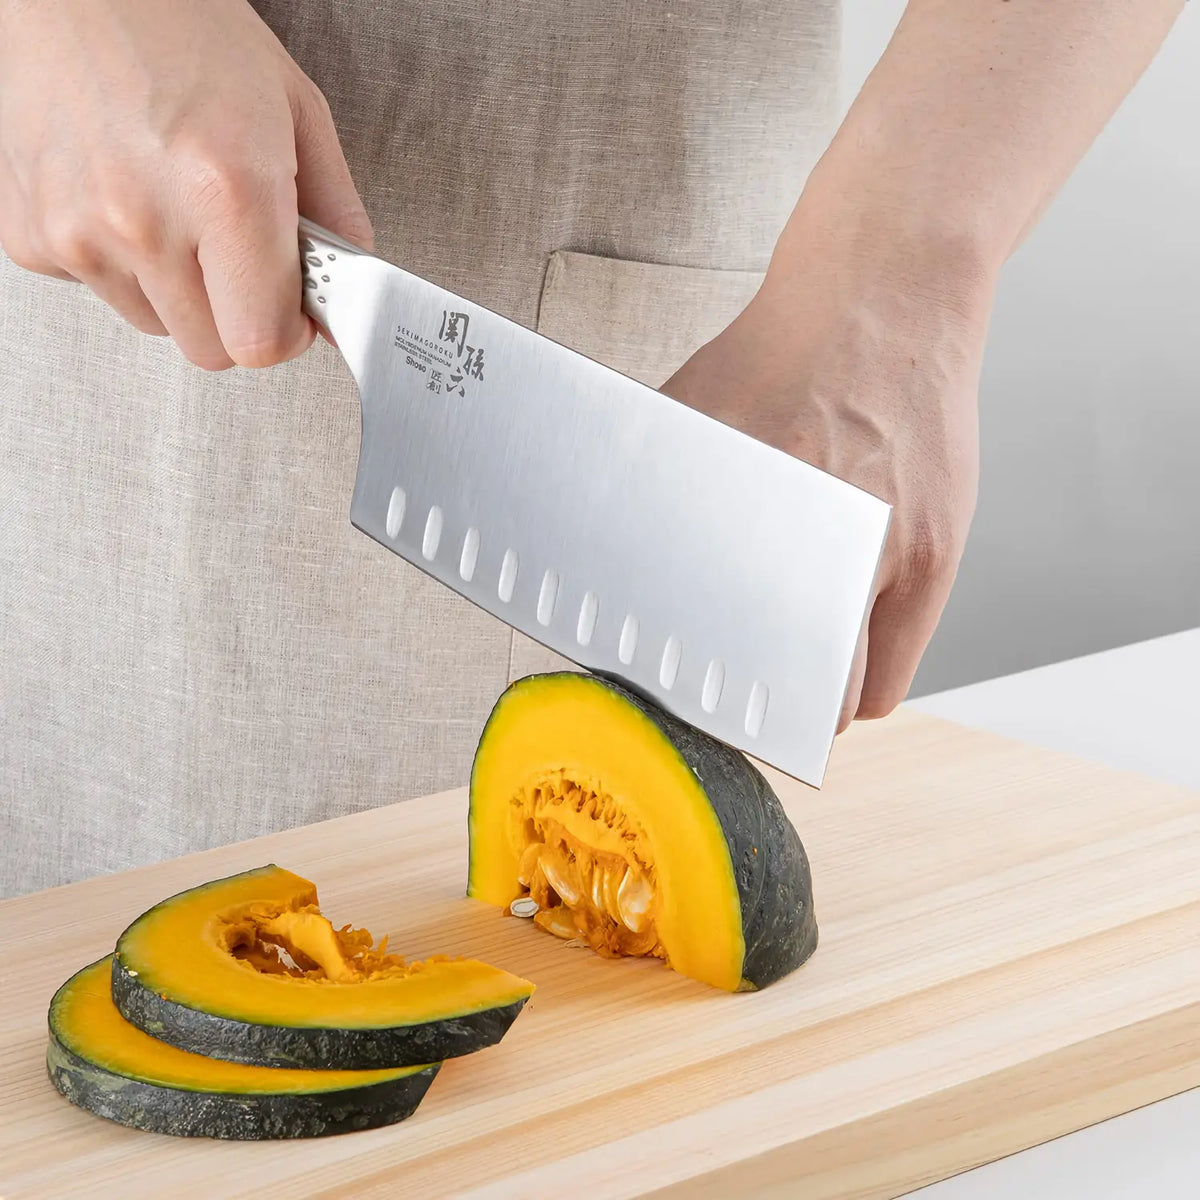 KAI Seki Magoroku Shoso Big Chef's Knife